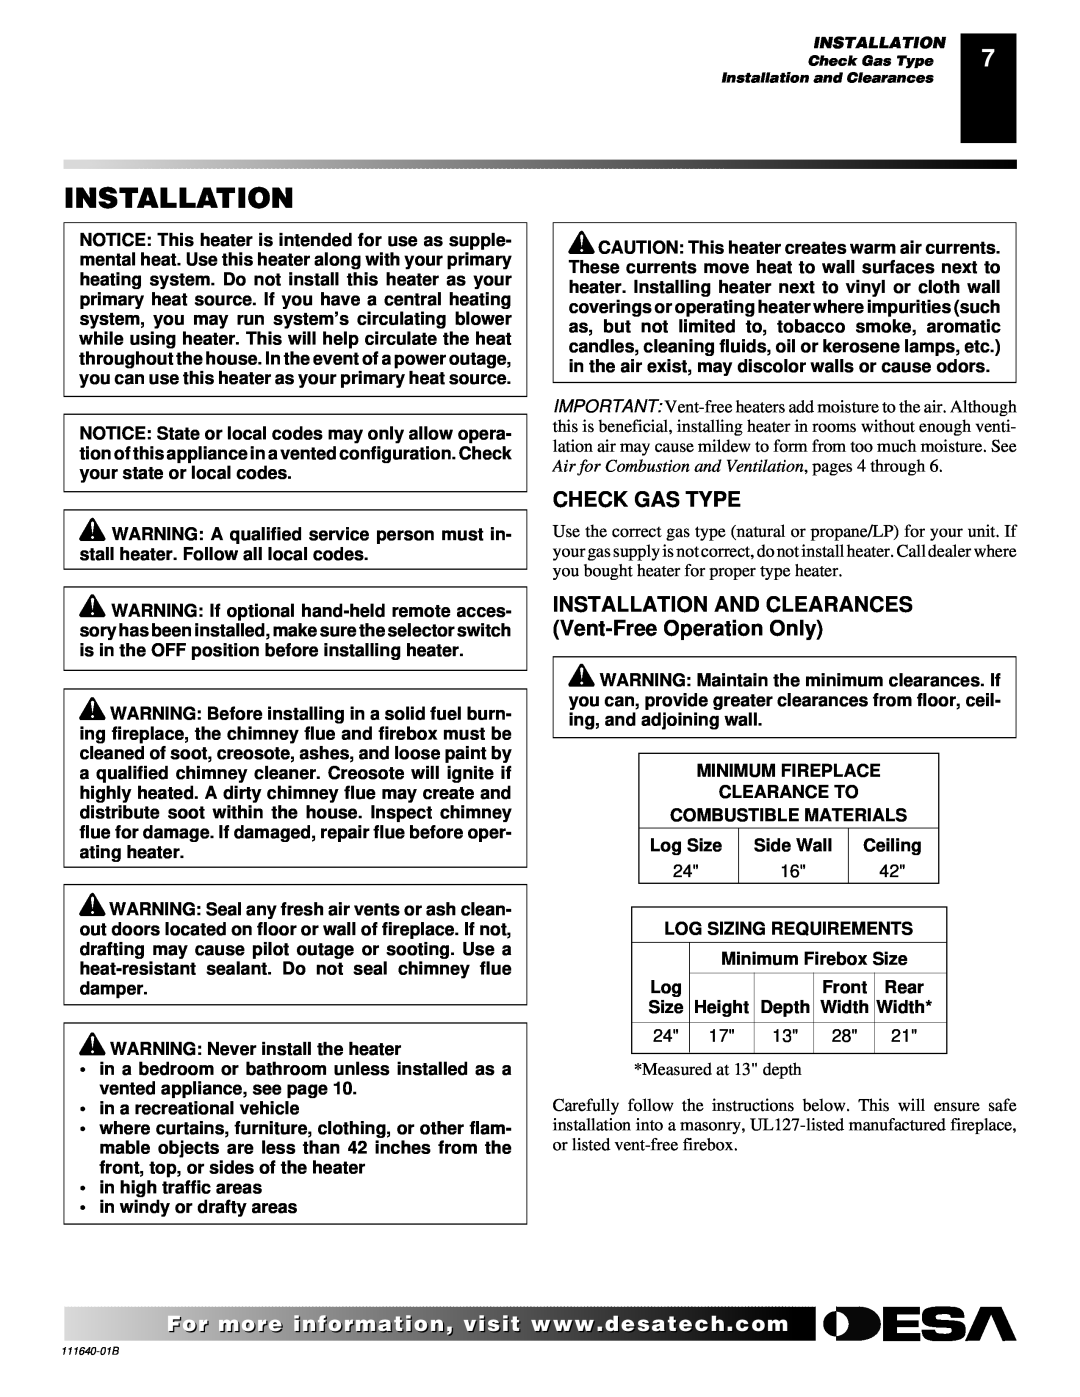 Desa VGL24NR, VGL24PR installation manual Installation, Check Gas Type 